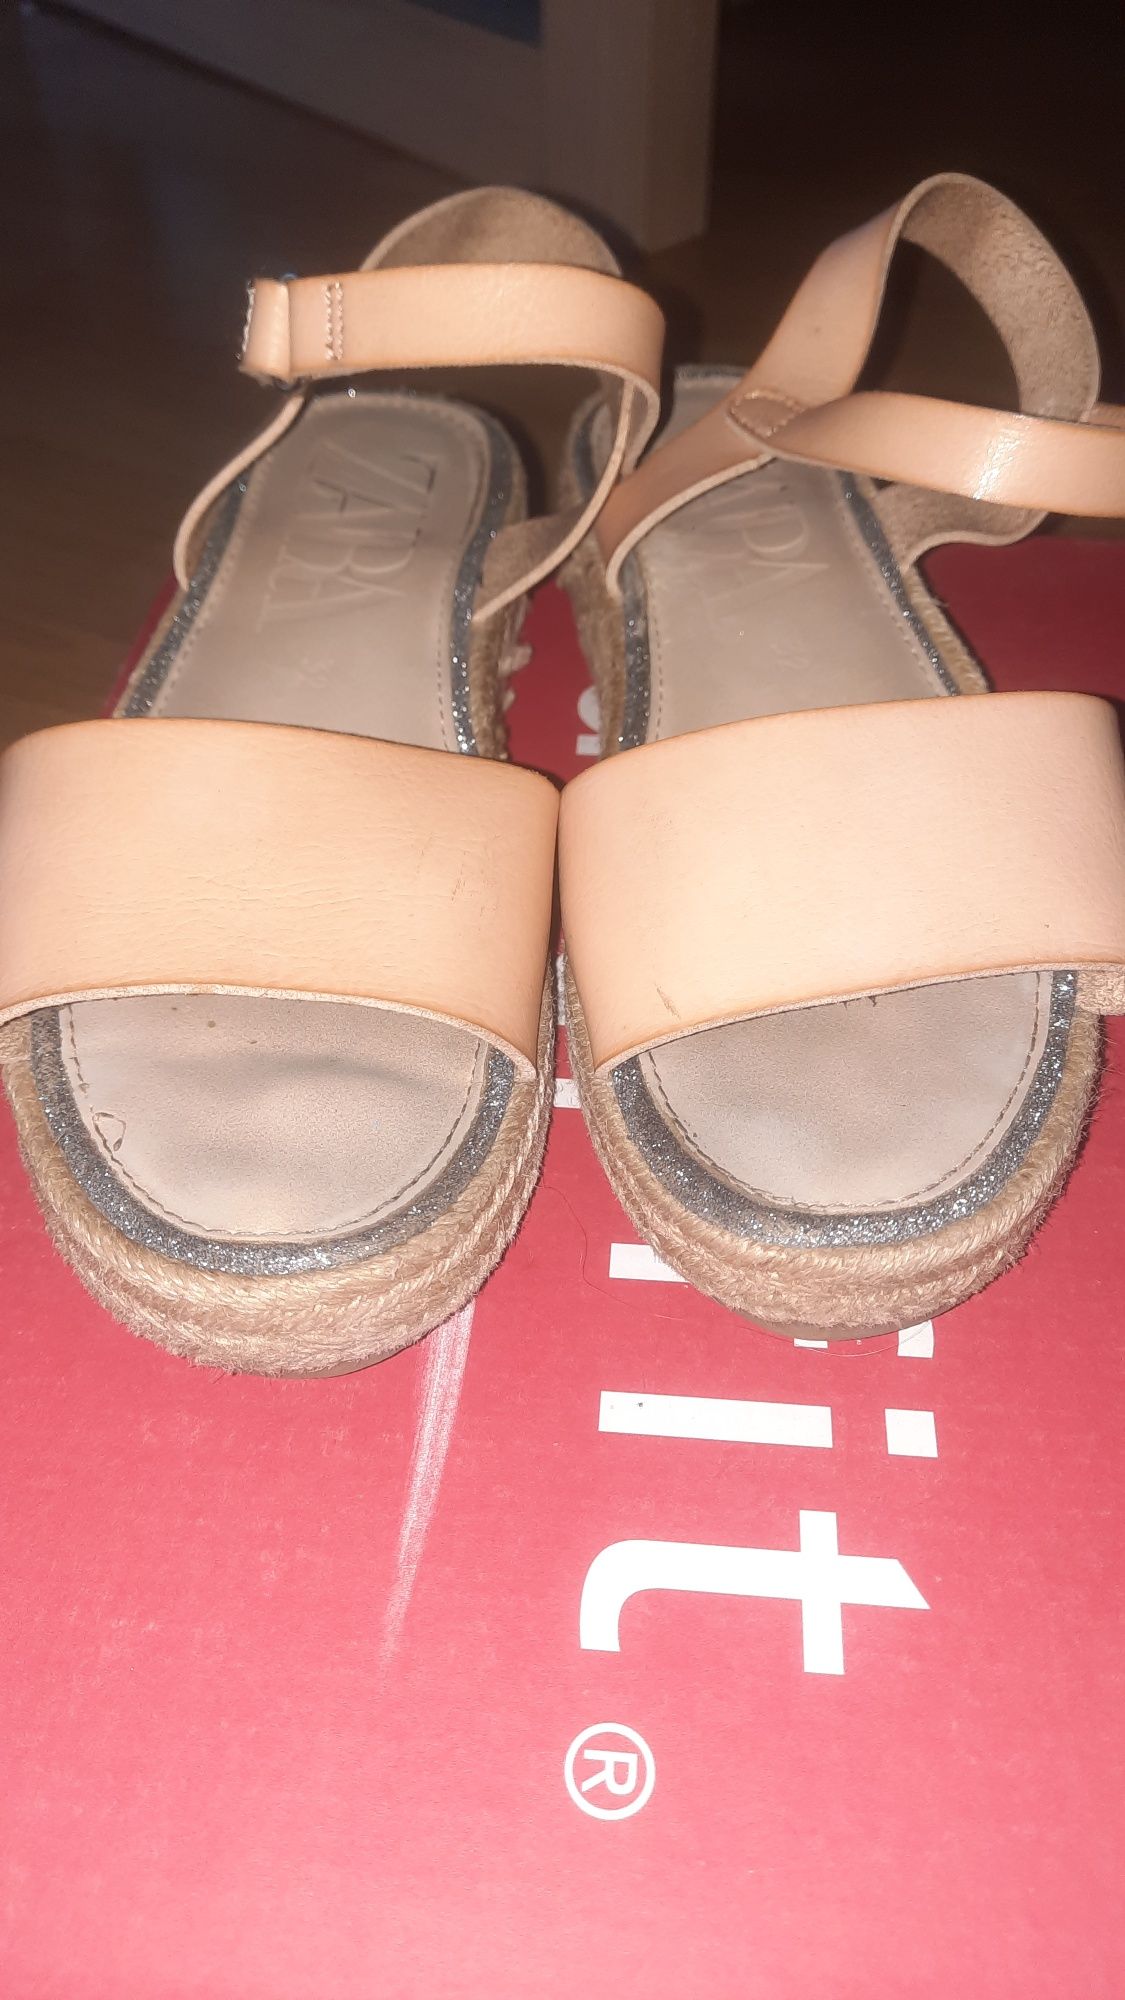 Босоножки, сандалии Zara 32